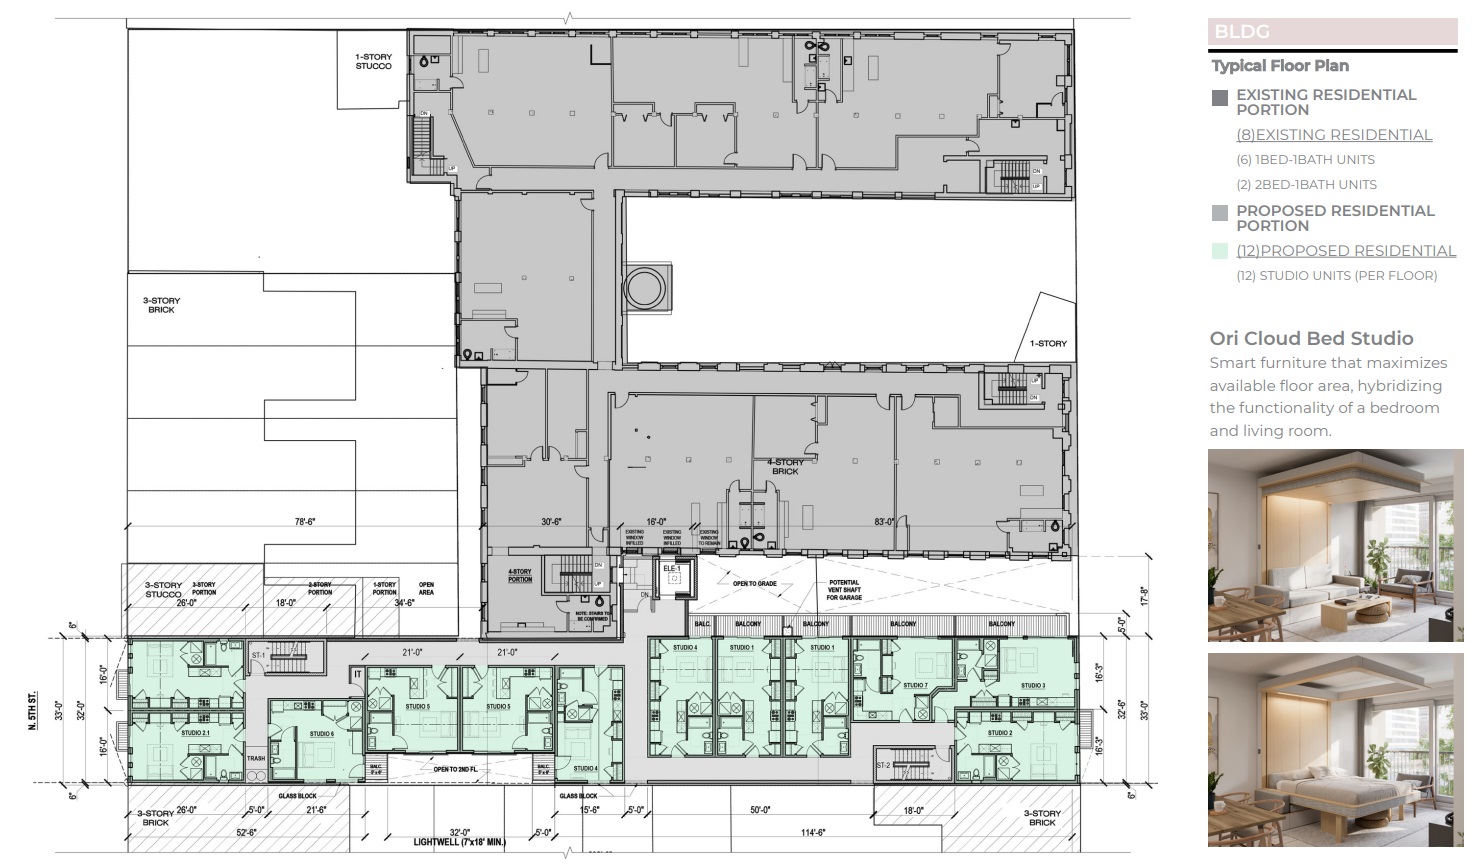 1321-25N5th-typical Floor Plan